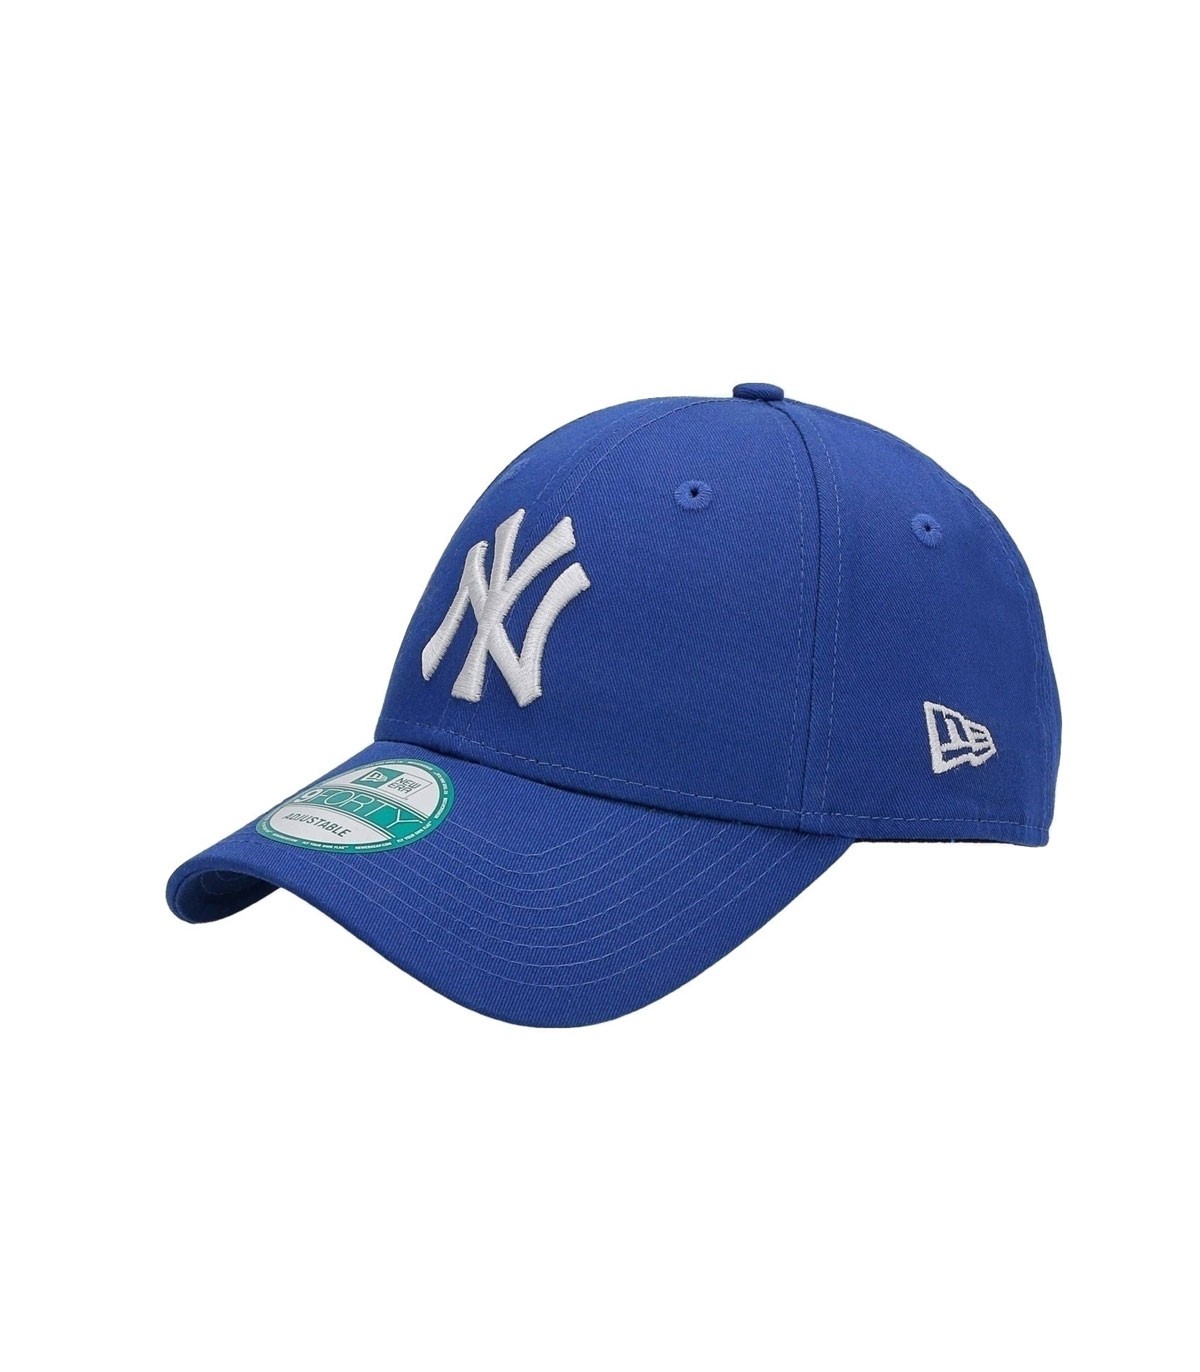 New Era - Gorra New York Yankees - Azul